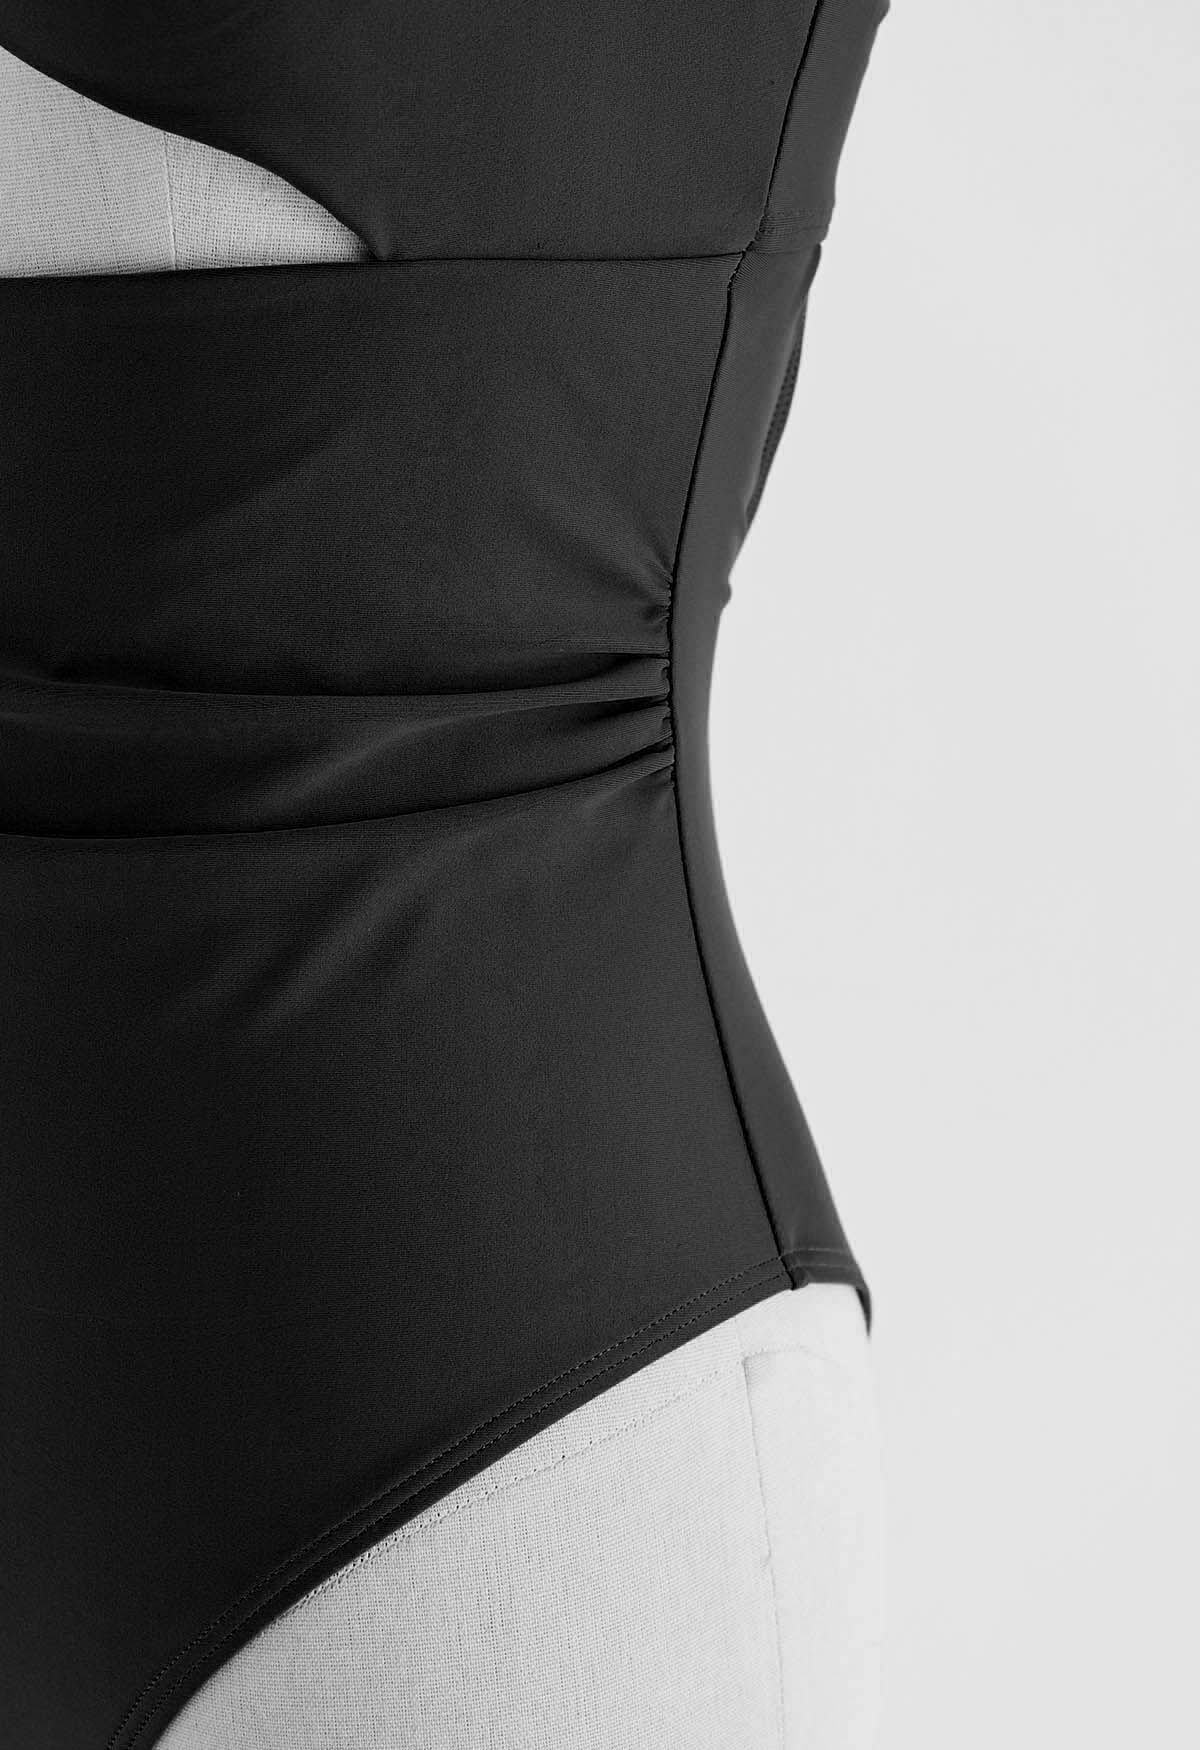 ملابس السباحة الملتوية ذات الفتحات الأمامية باللون الأسود